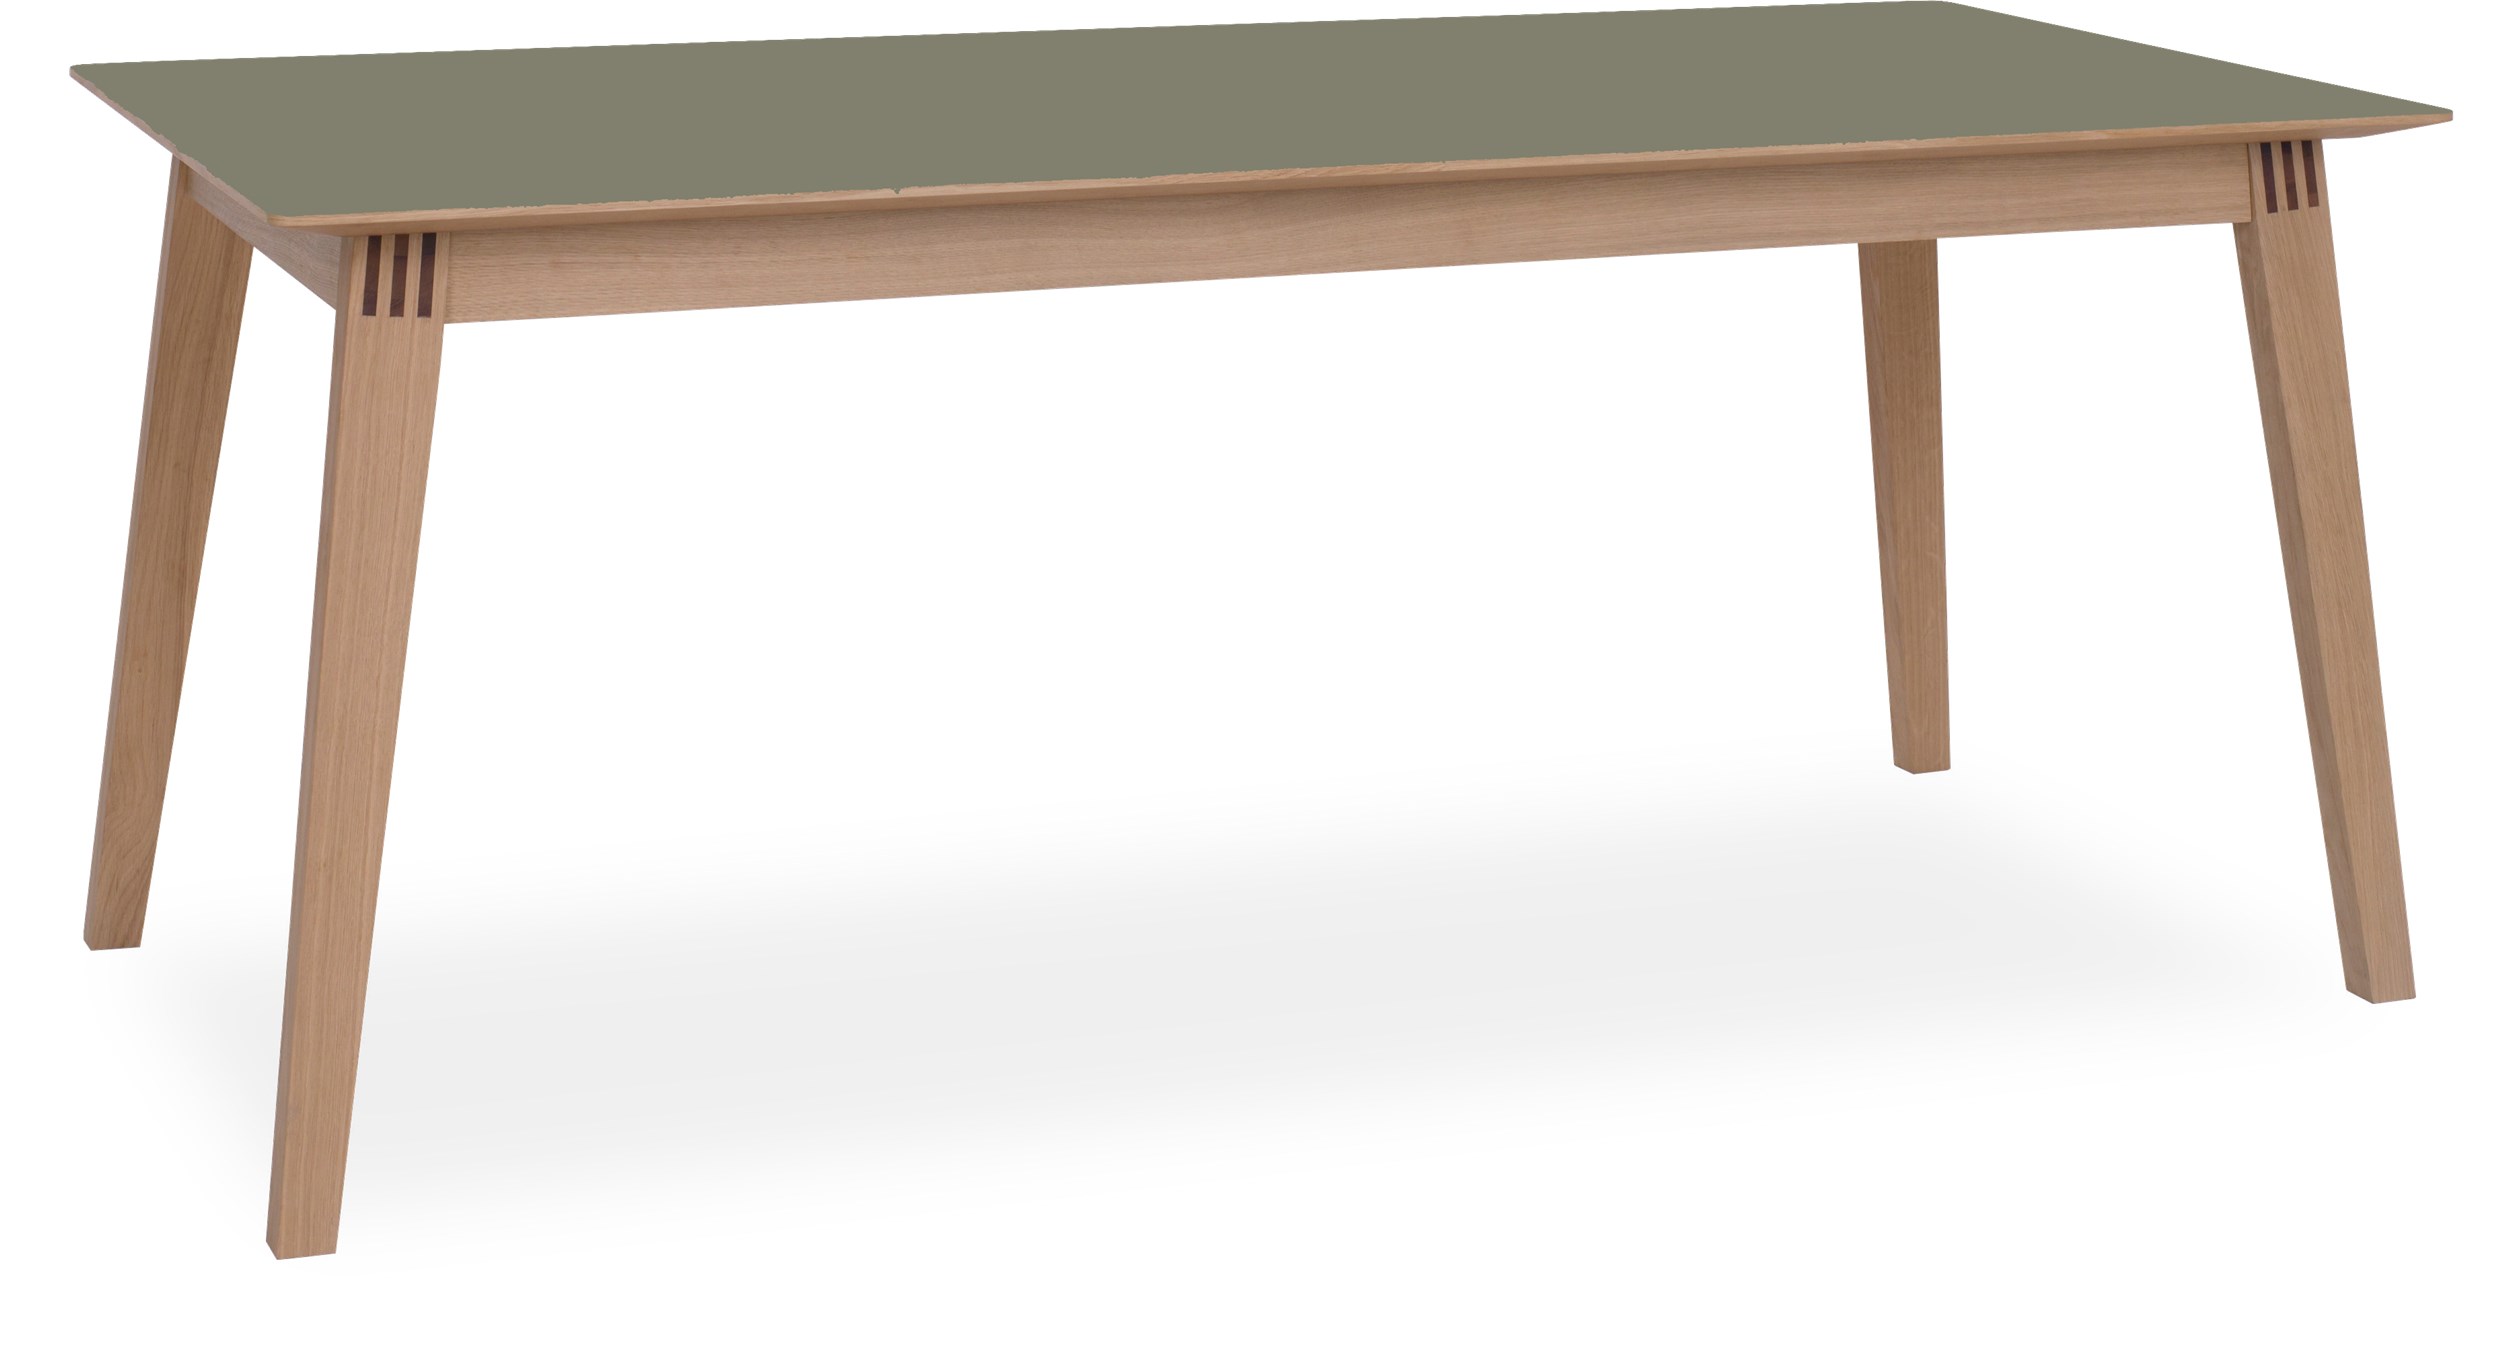 Space Spisebord 180 x 90 x 75 cm - 442 Olive linoleum, kant i hvidpigmenteret matlakeret eg og ben i massiv hvidpigmenteret matlakeret eg.